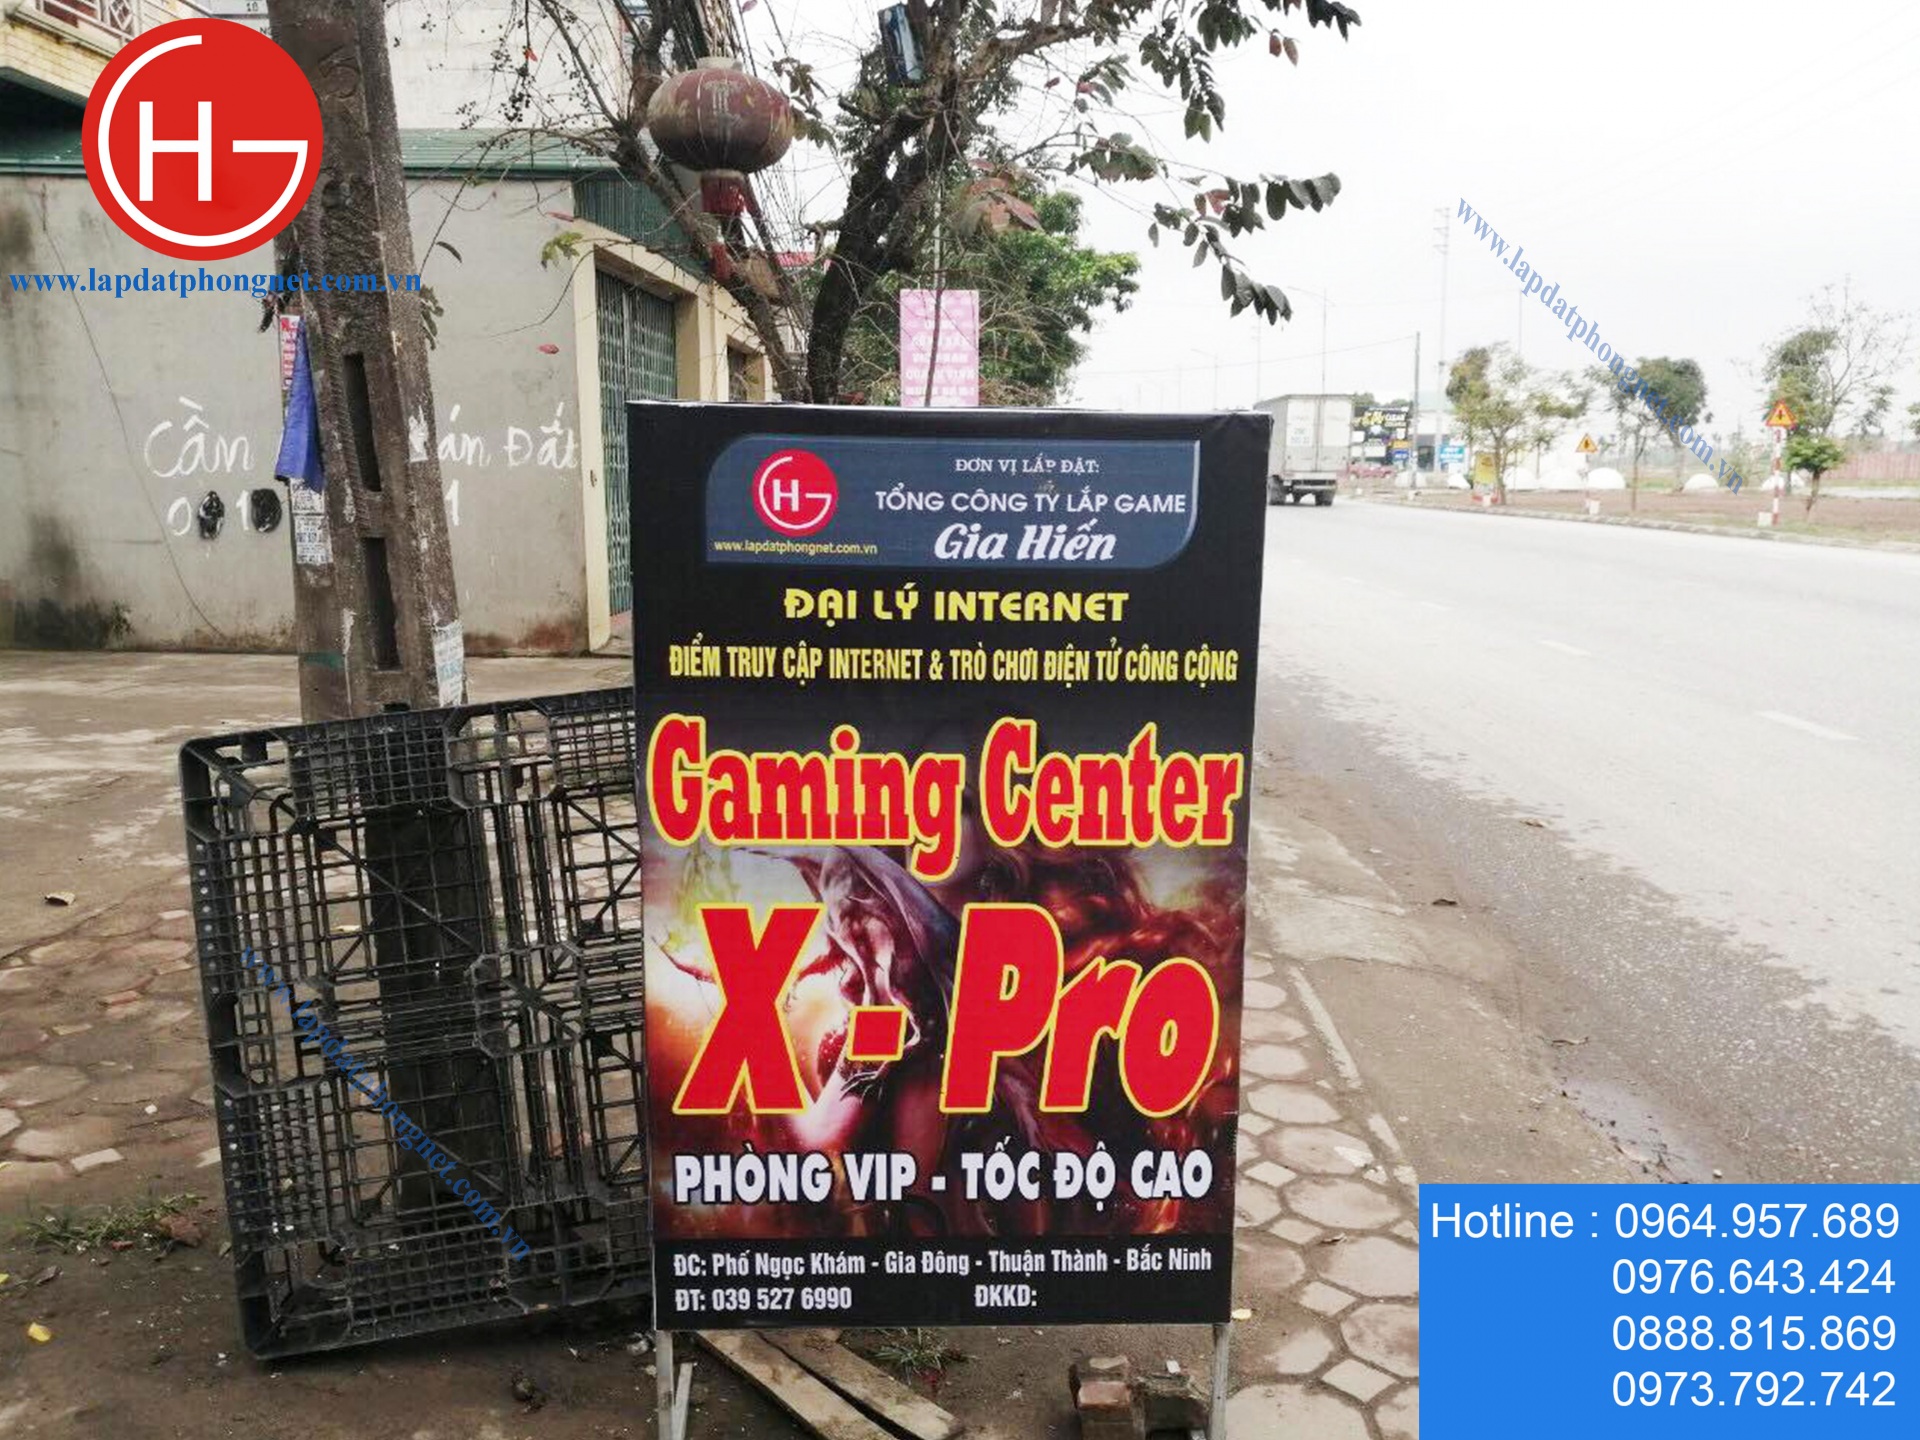 Lắp đặt phòng game giá rẻ cho anh Thao tại Thuận Thành